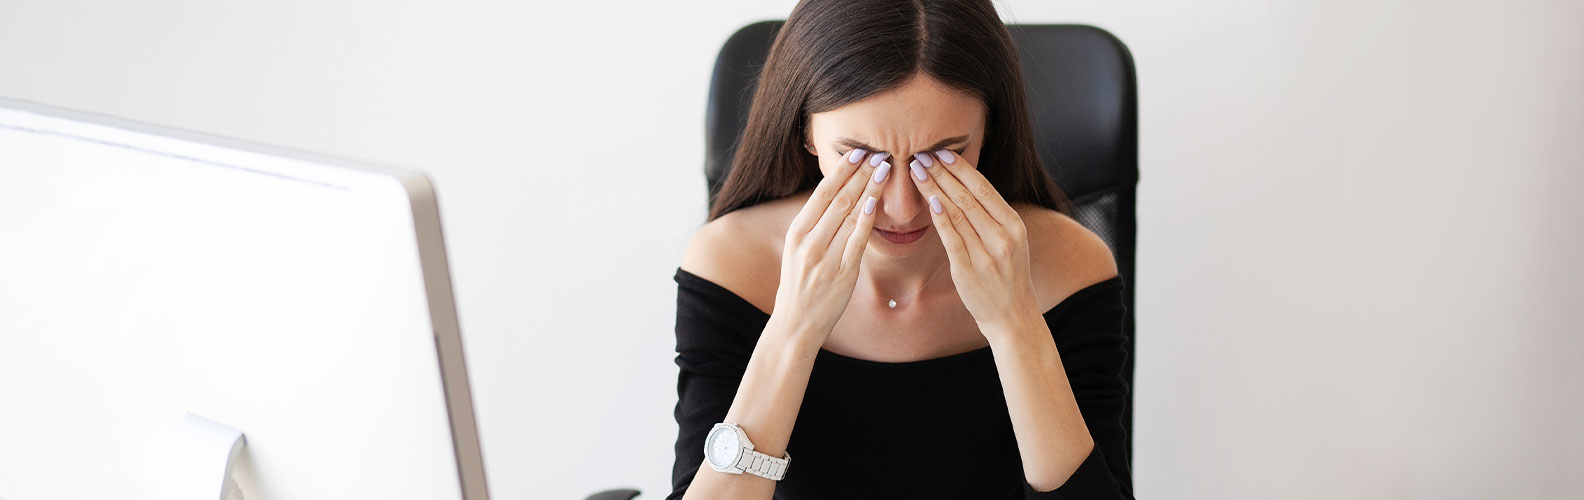 donna affetta da dolore agli occhi, possibile sindrome ischemica oculare